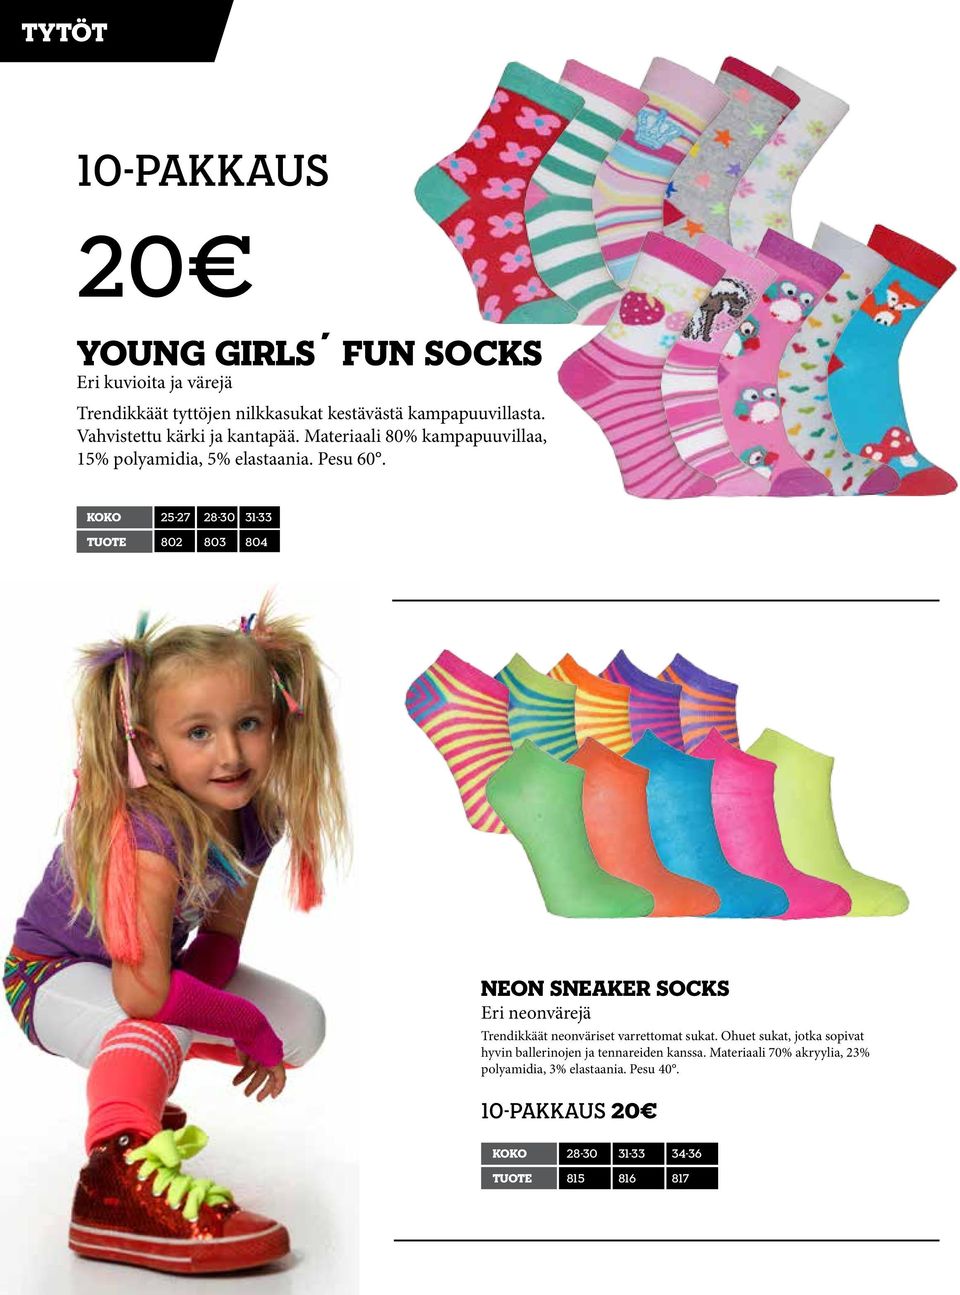 koko 25-27 28-30 31-33 tuote 802 803 804 Neon sneaker socks Eri neonvärejä Trendikkäät neonväriset varrettomat sukat.